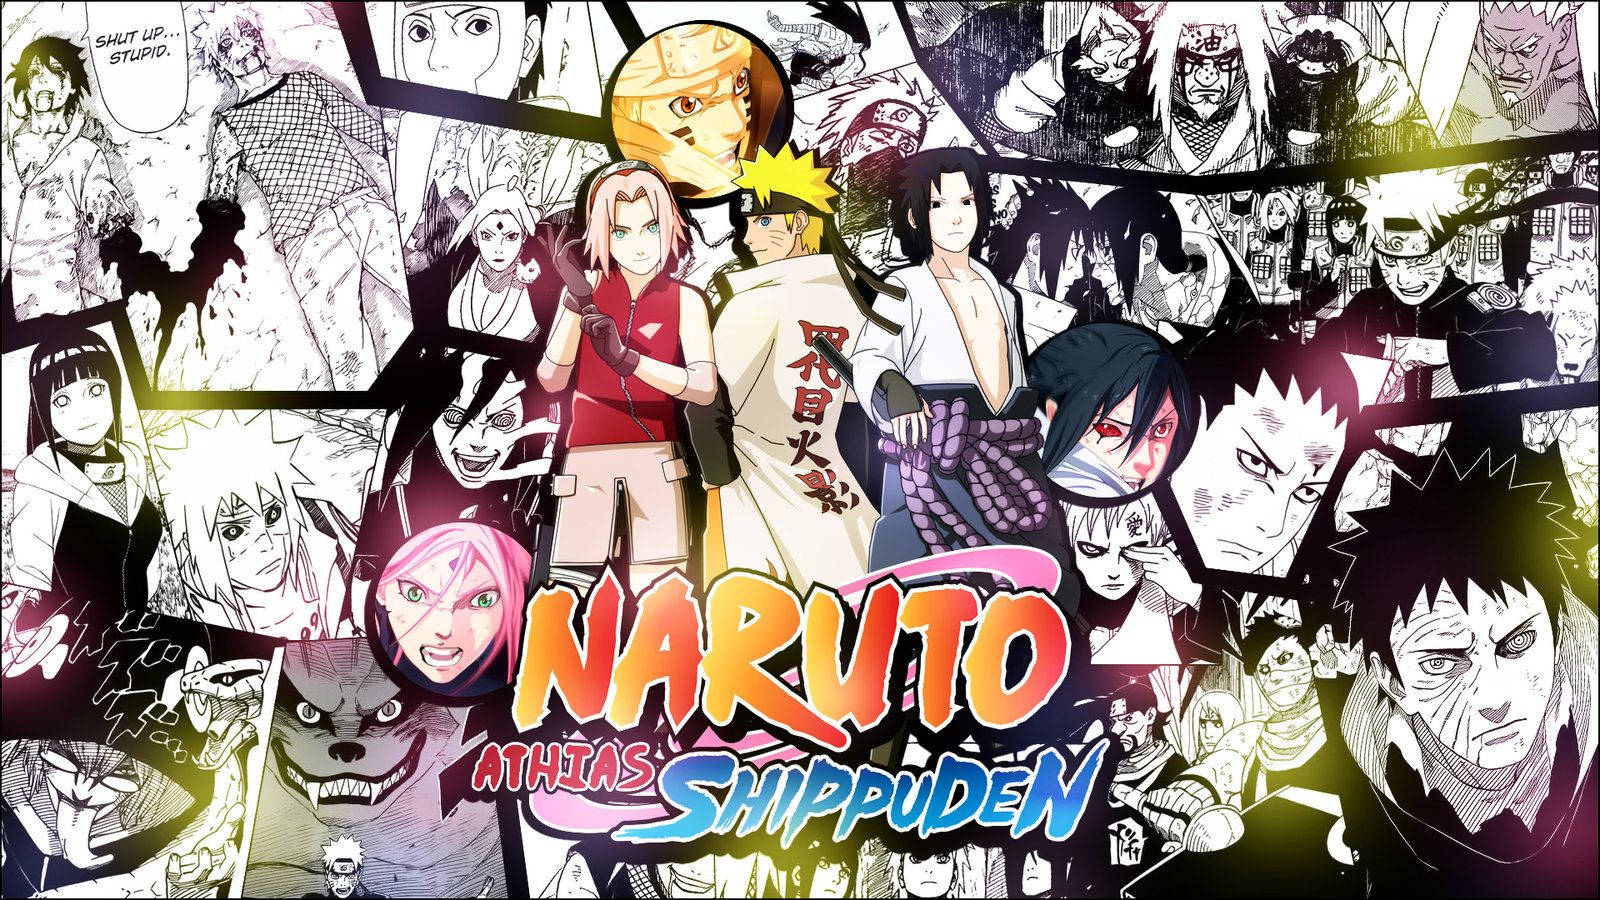 Naruto Uzumaki from the Naruto Shippuden Manga Wallpaper